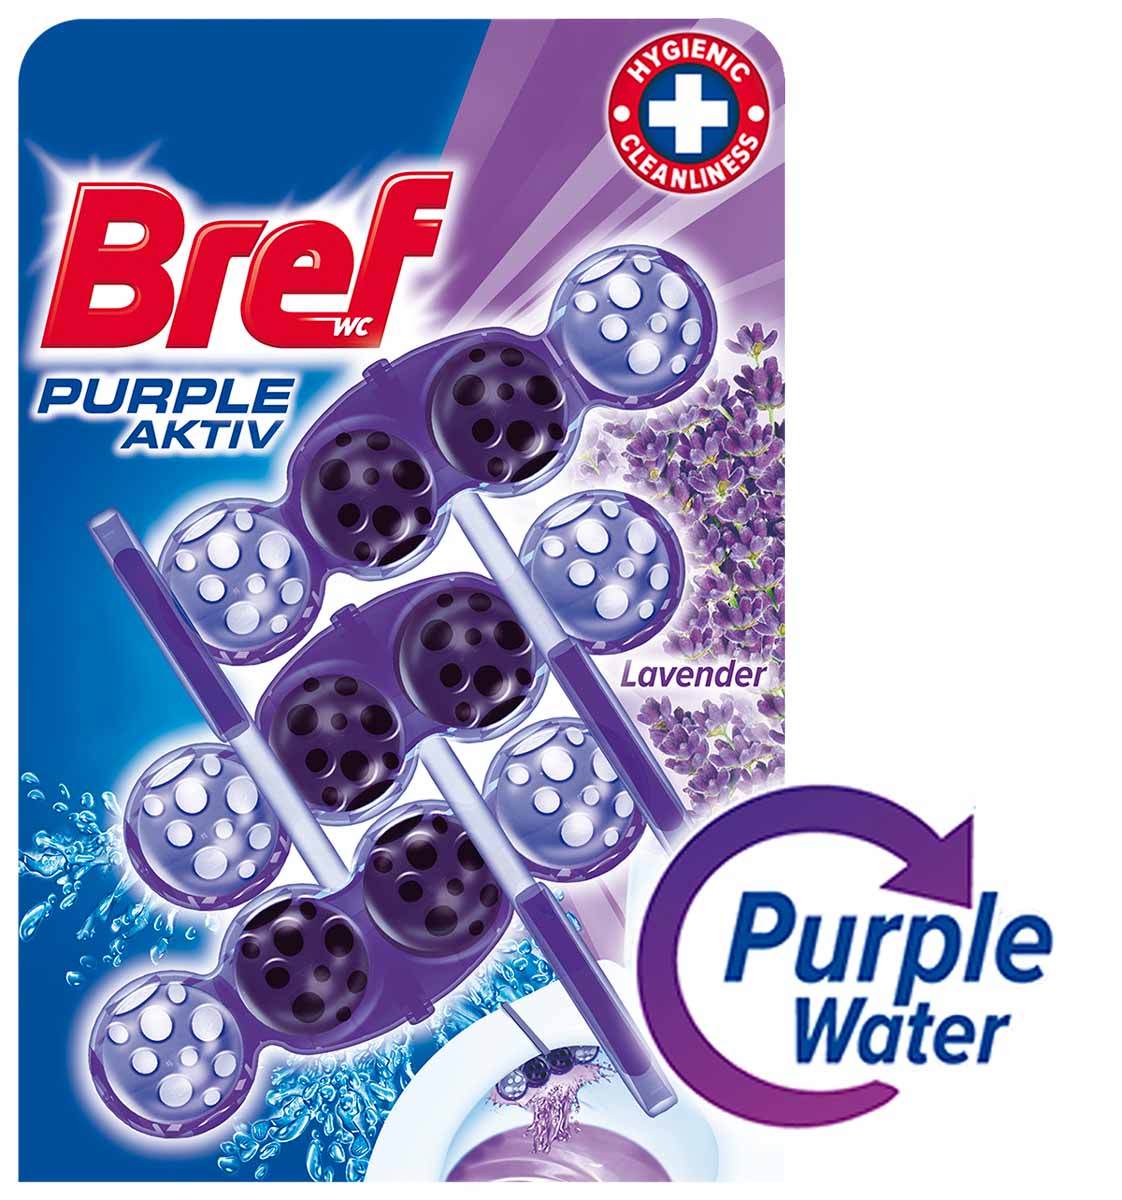 Bref Purple Aktiv Lavender 3 x 50 g